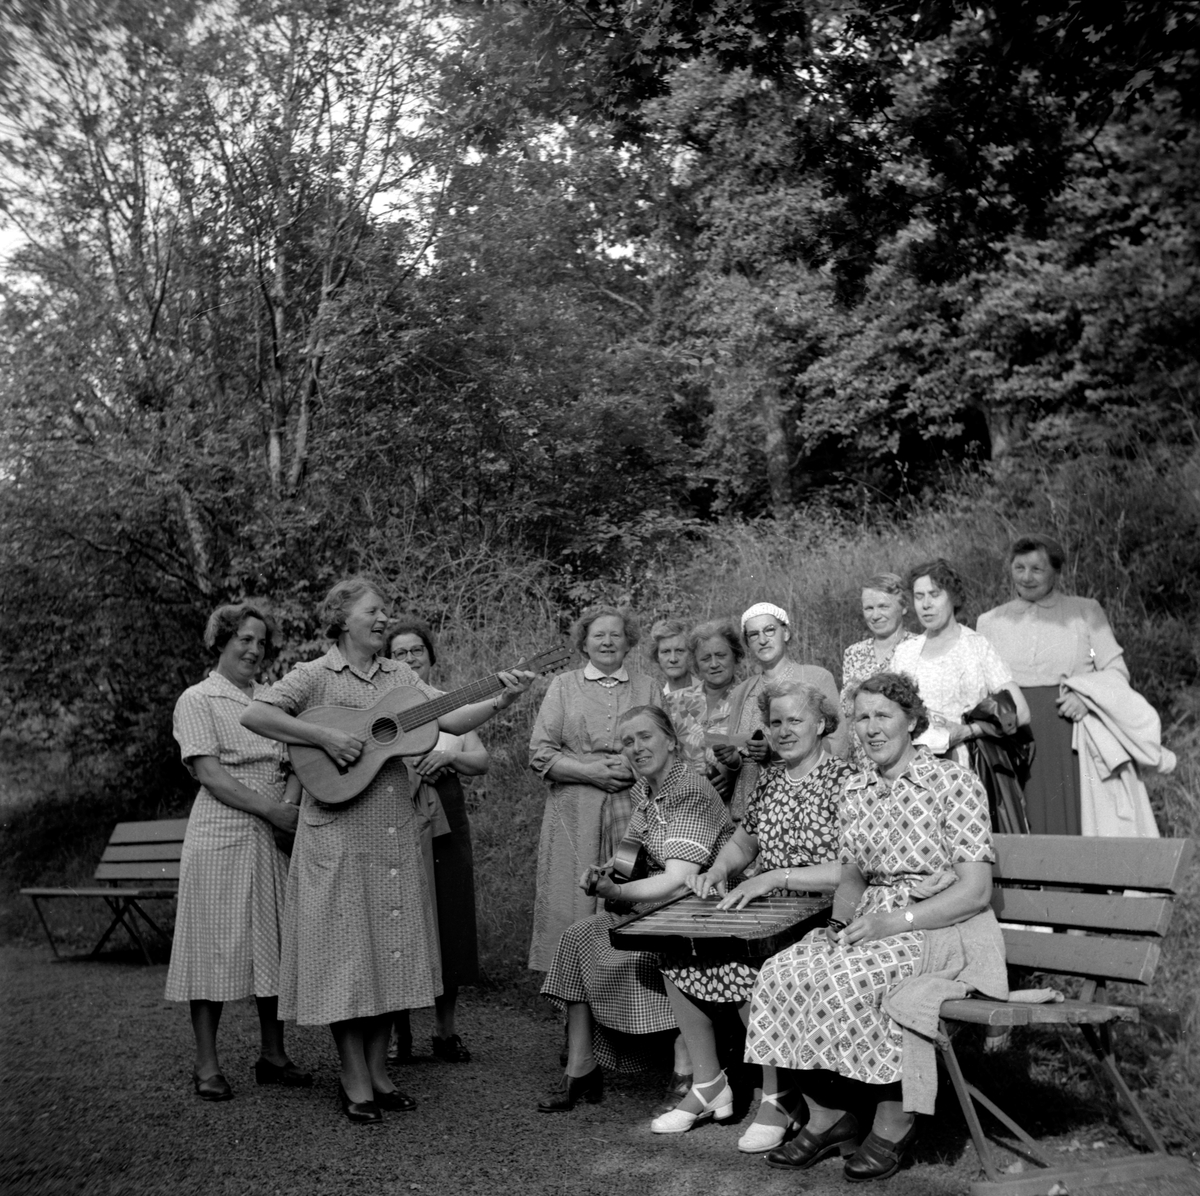 Vätterstugans sångkör. Strängspelande damer från stugföreningen samlade nedanför Vätterstugans sommarhem i närheten av Vista kulle.